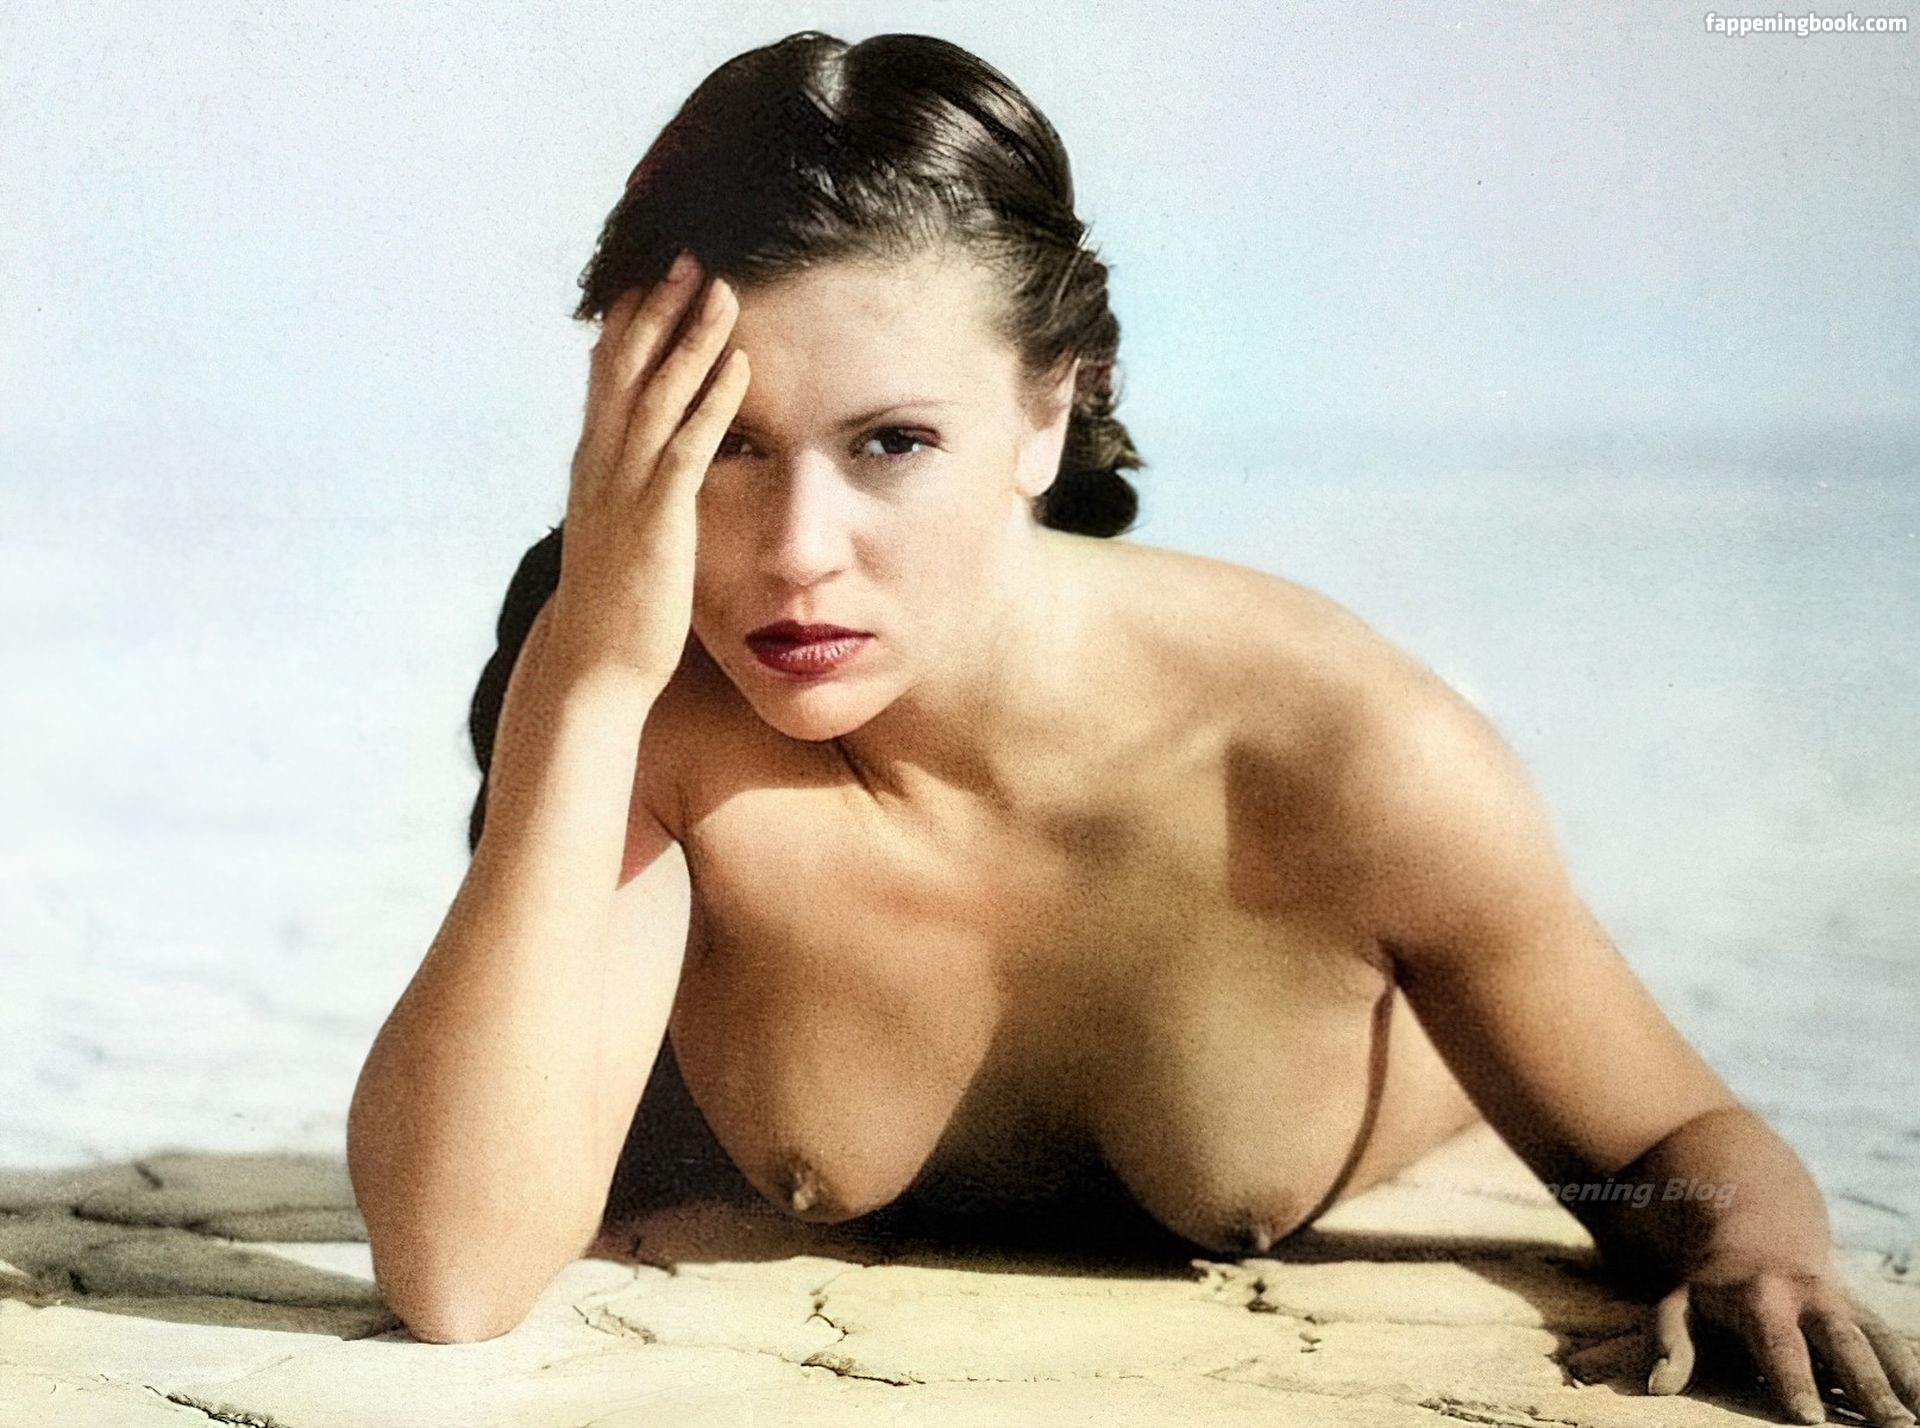 Alyssa Milano Nude